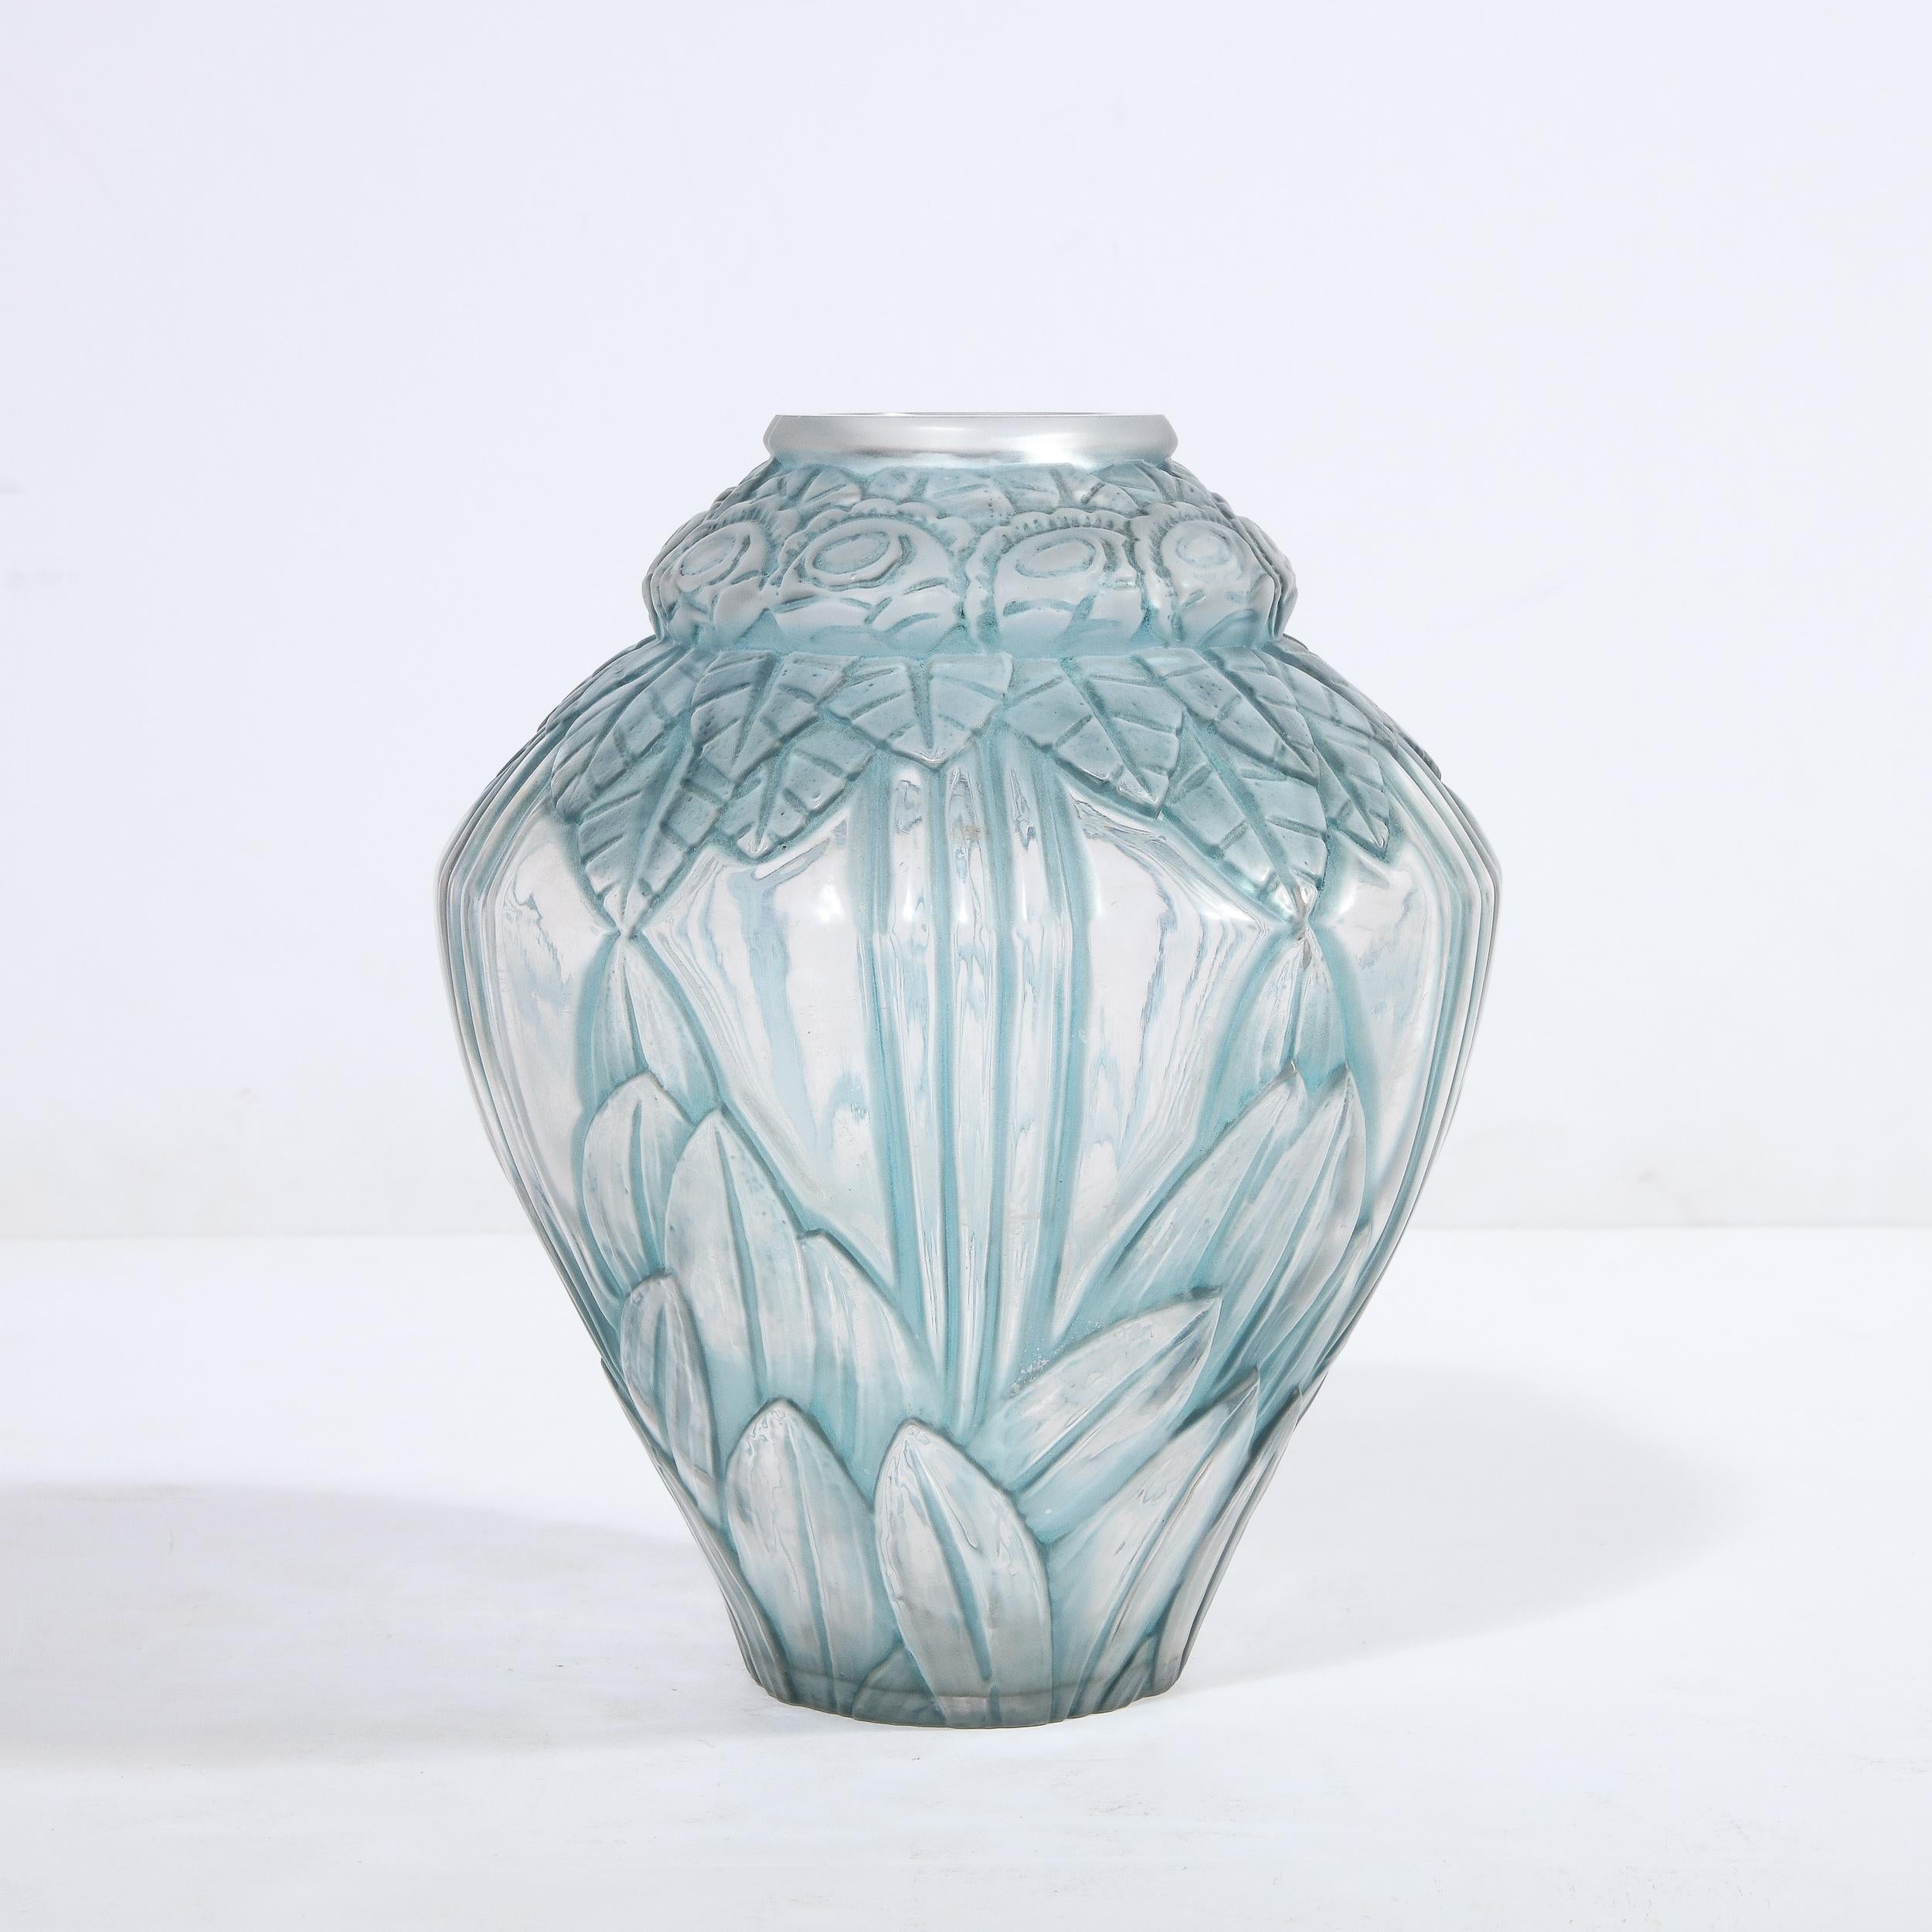 Cet étonnant vase Art Déco en bleu pâle a été réalisé par l'atelier estimé d'Andre Hunebelle (l'un des meilleurs verriers de France à cette époque) vers 1930. Il présente un corps cylindrique robuste qui s'évase au centre et se rétrécit en haut et